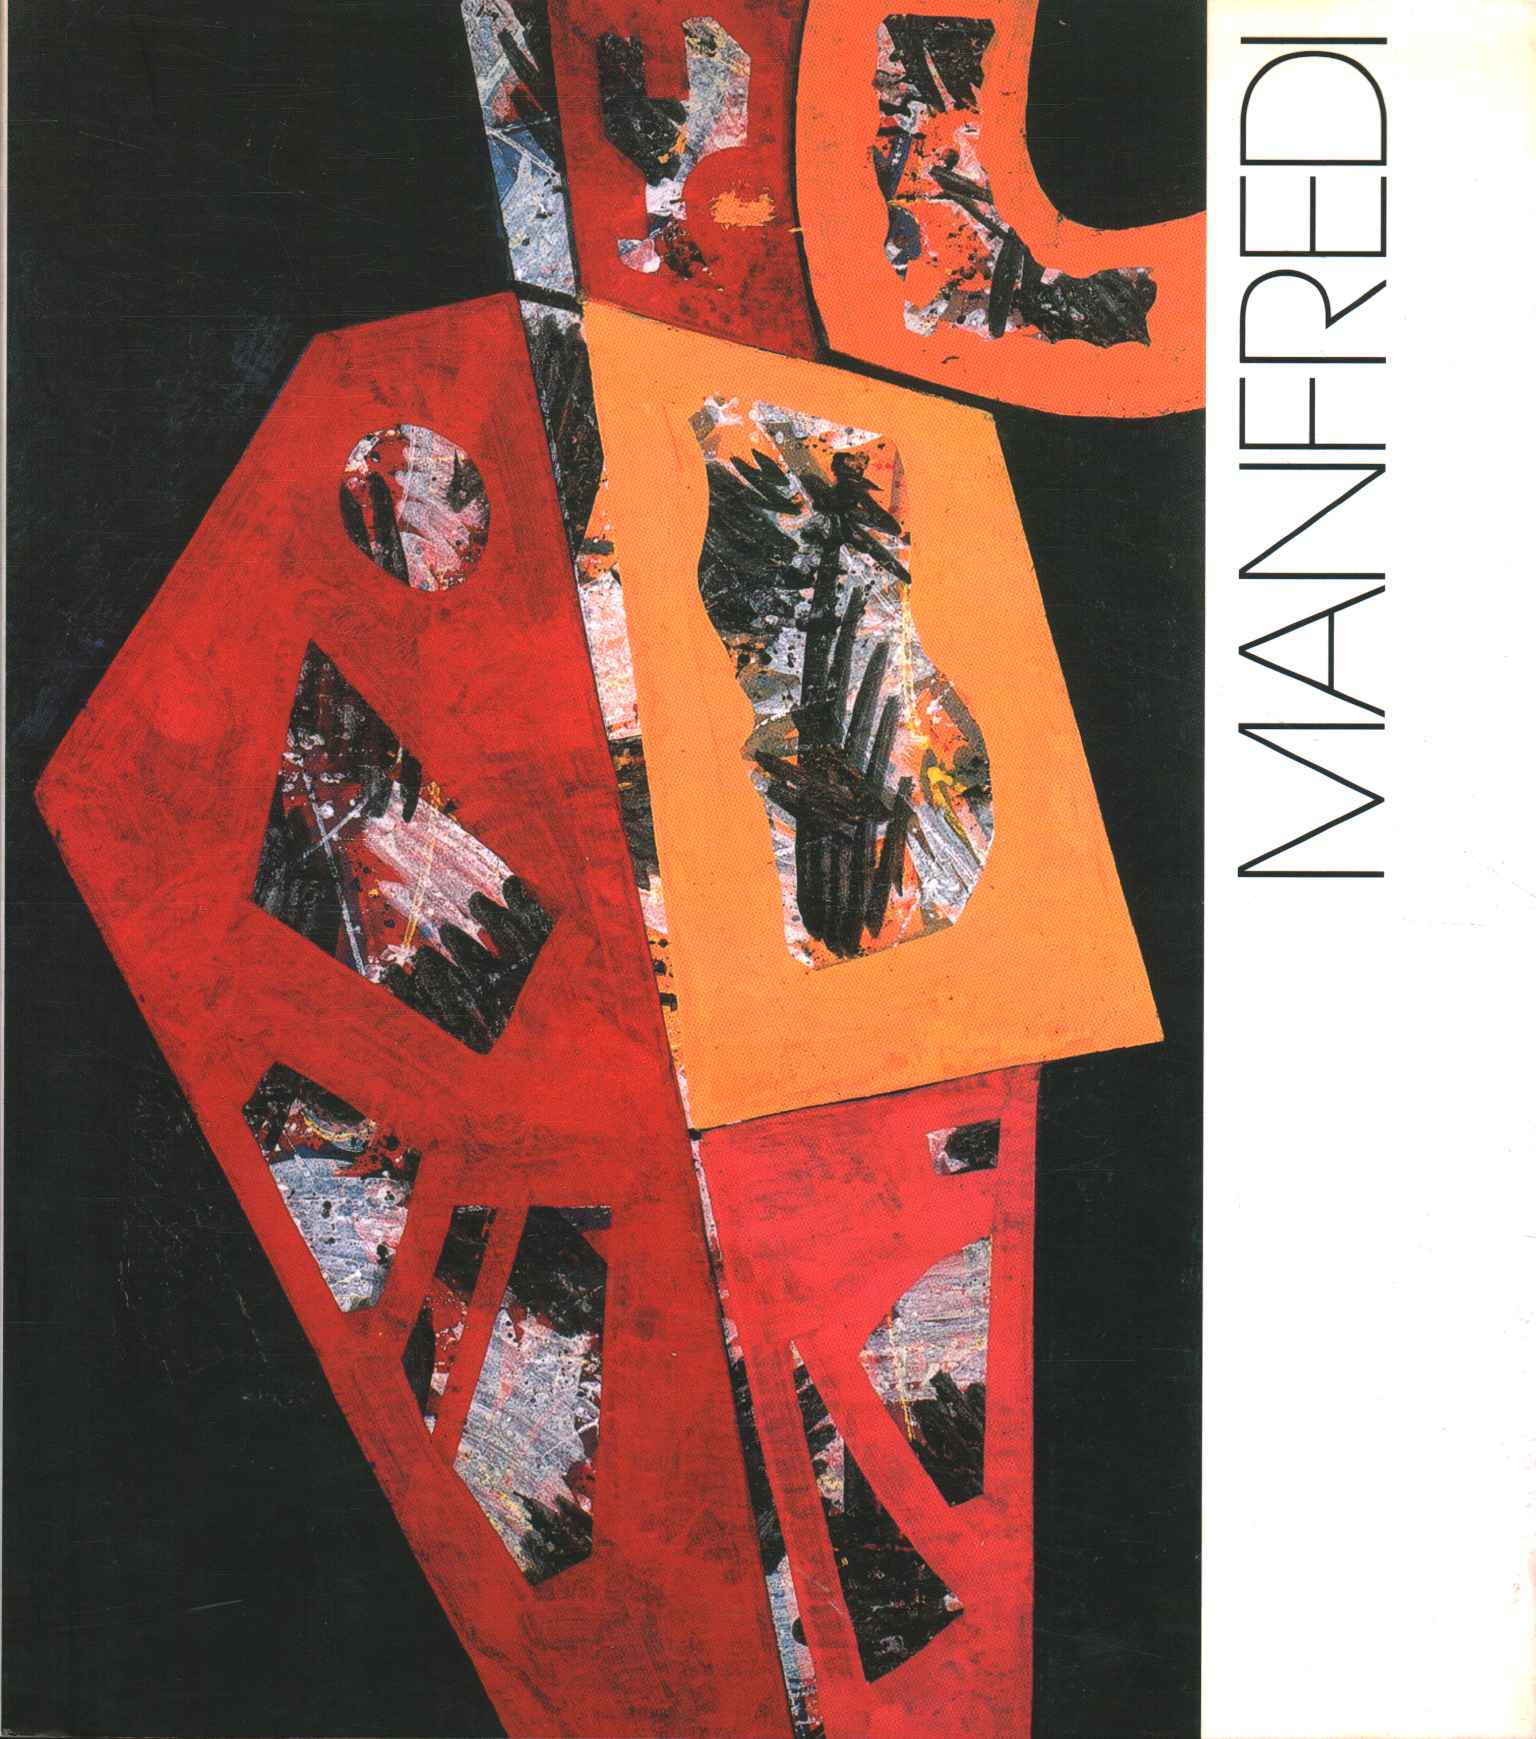 Manfredi. Obras 2000-2003